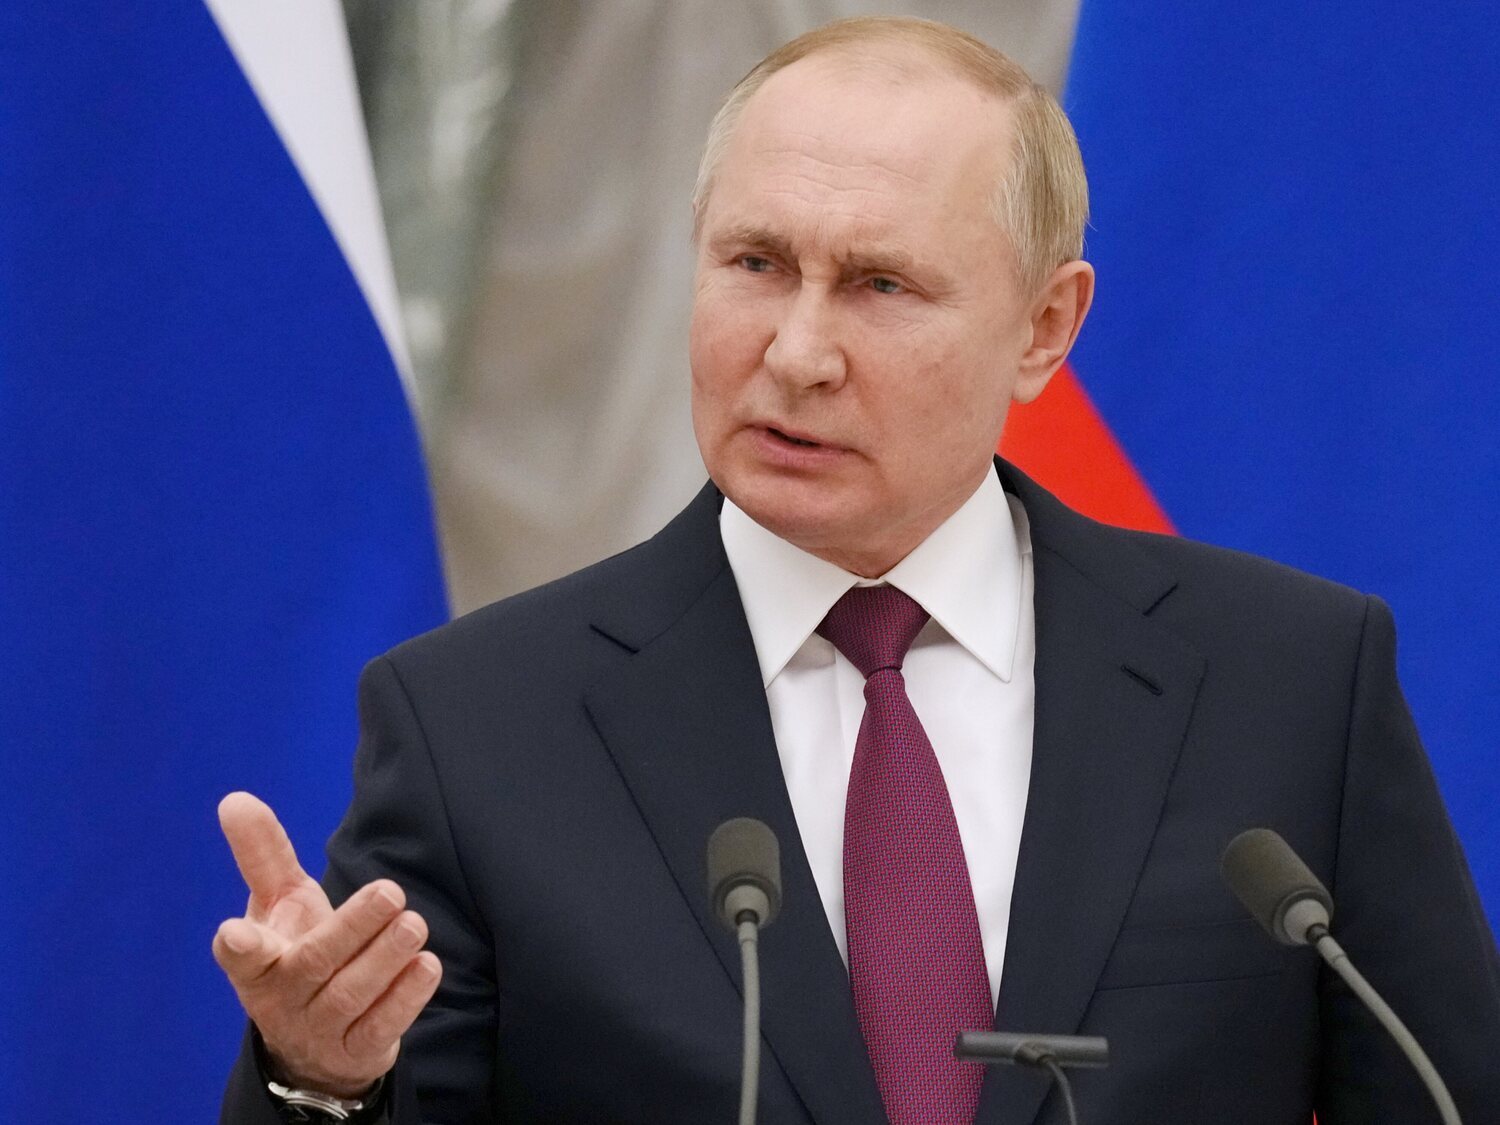 El ex jefe de la Inteligencia británica en Rusia pronostica cuándo "será destituido Putin como presidente"